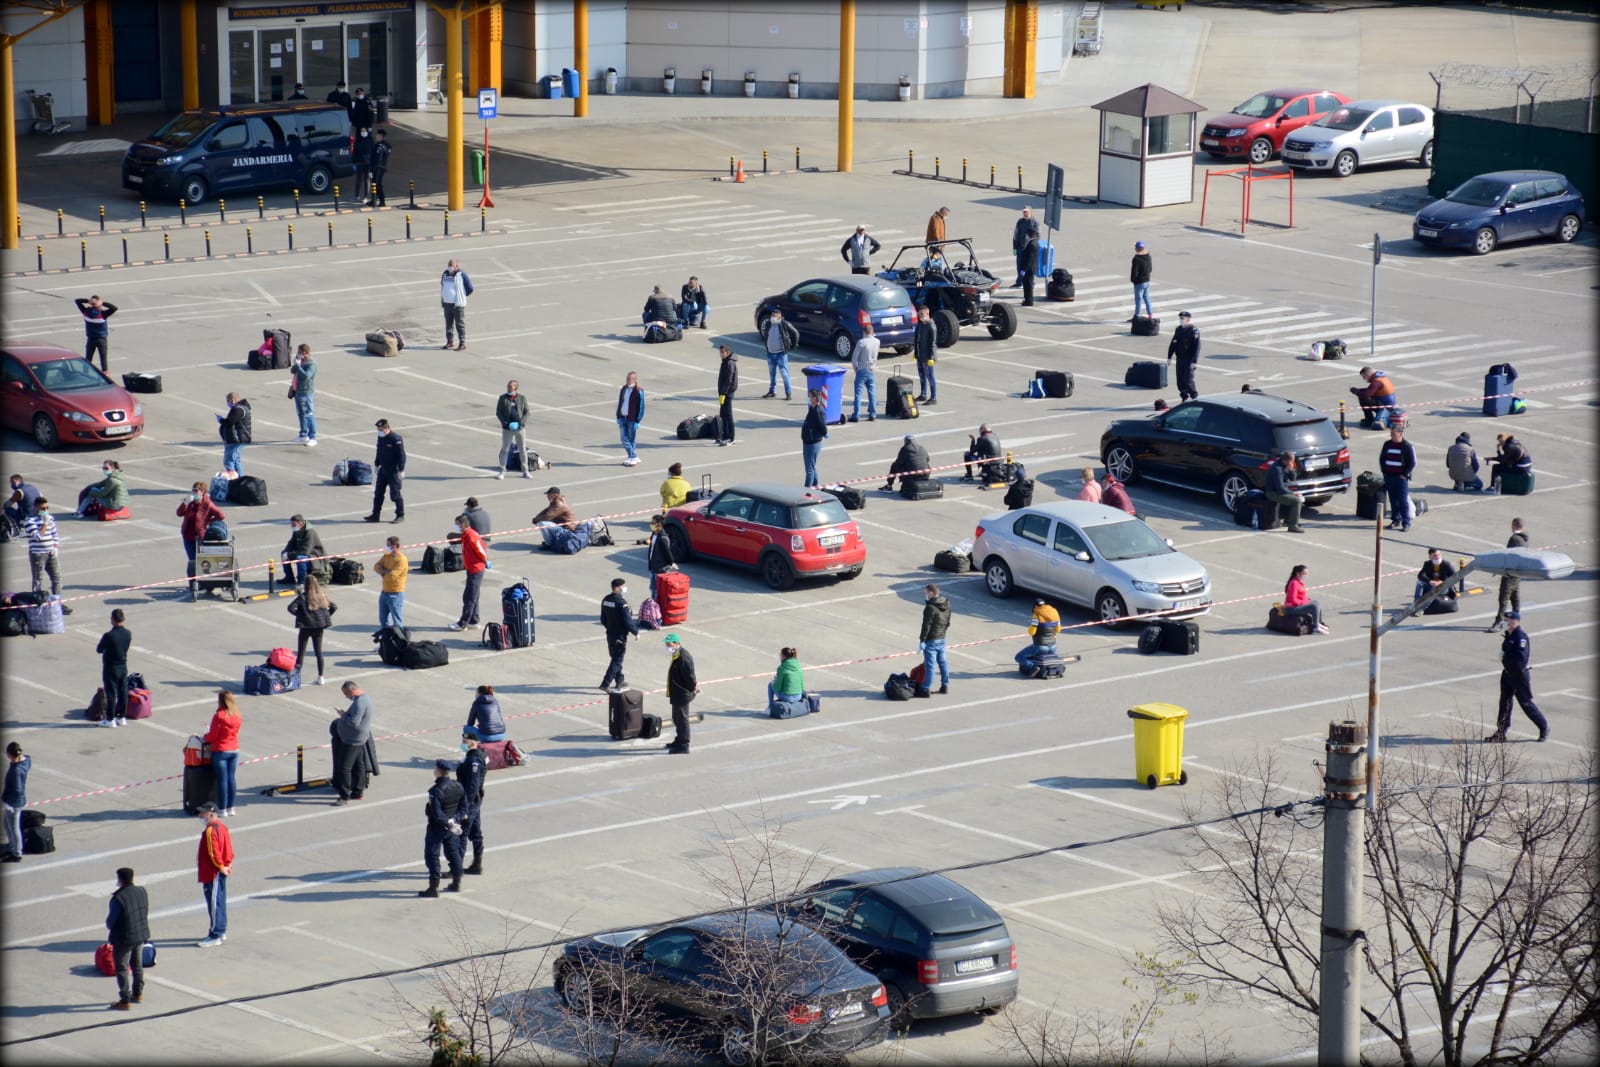 Măsurile luate în Aeroportul Cluj după ce mii de oameni au așteptat înghesuiți - Imaginea 1